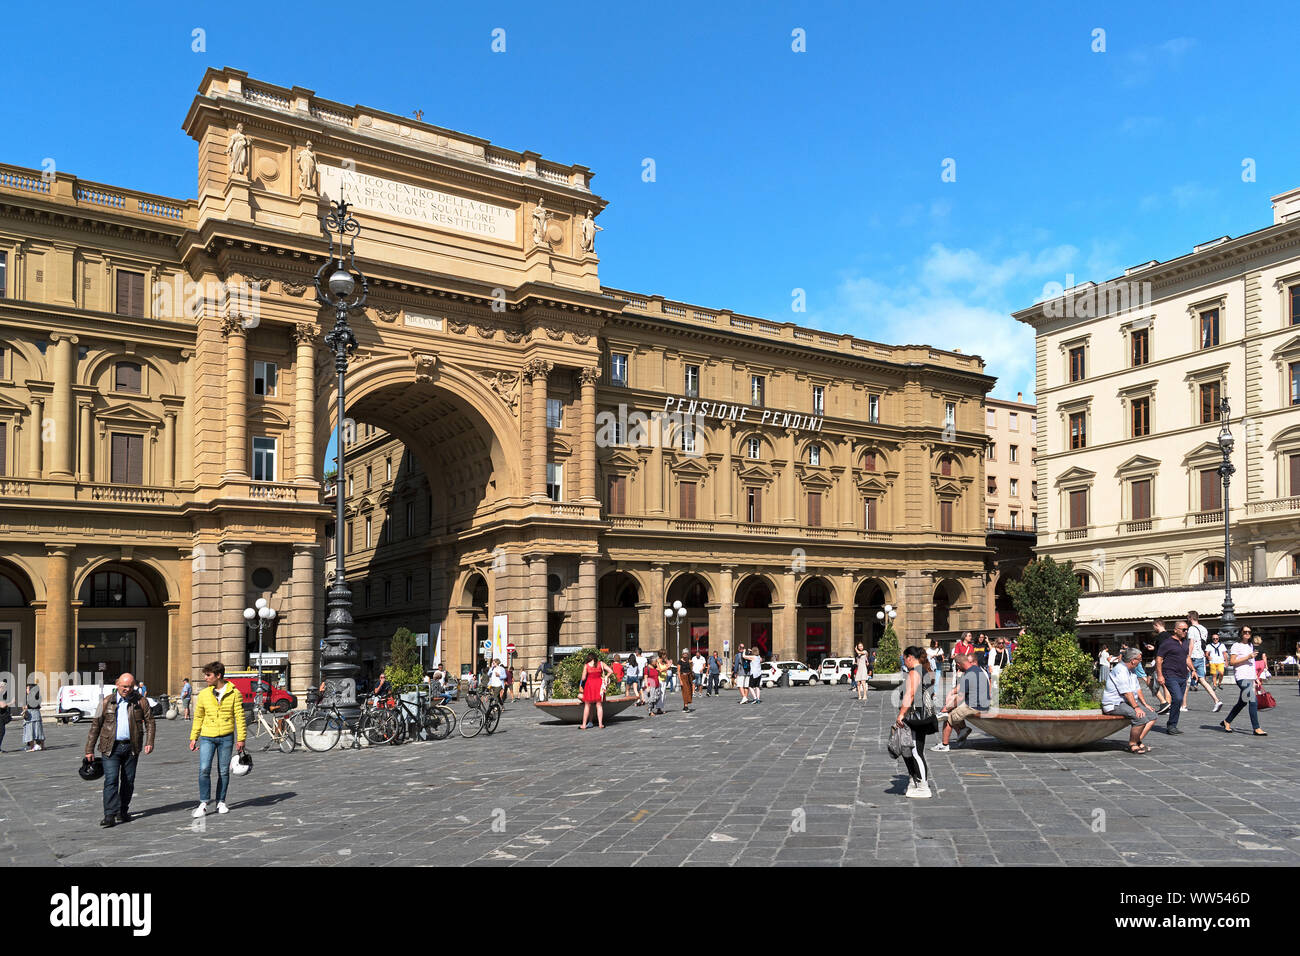 Der Triumphbogen auf der Piazza della republica in der Stadt florenz, toskana, italien. Stockfoto